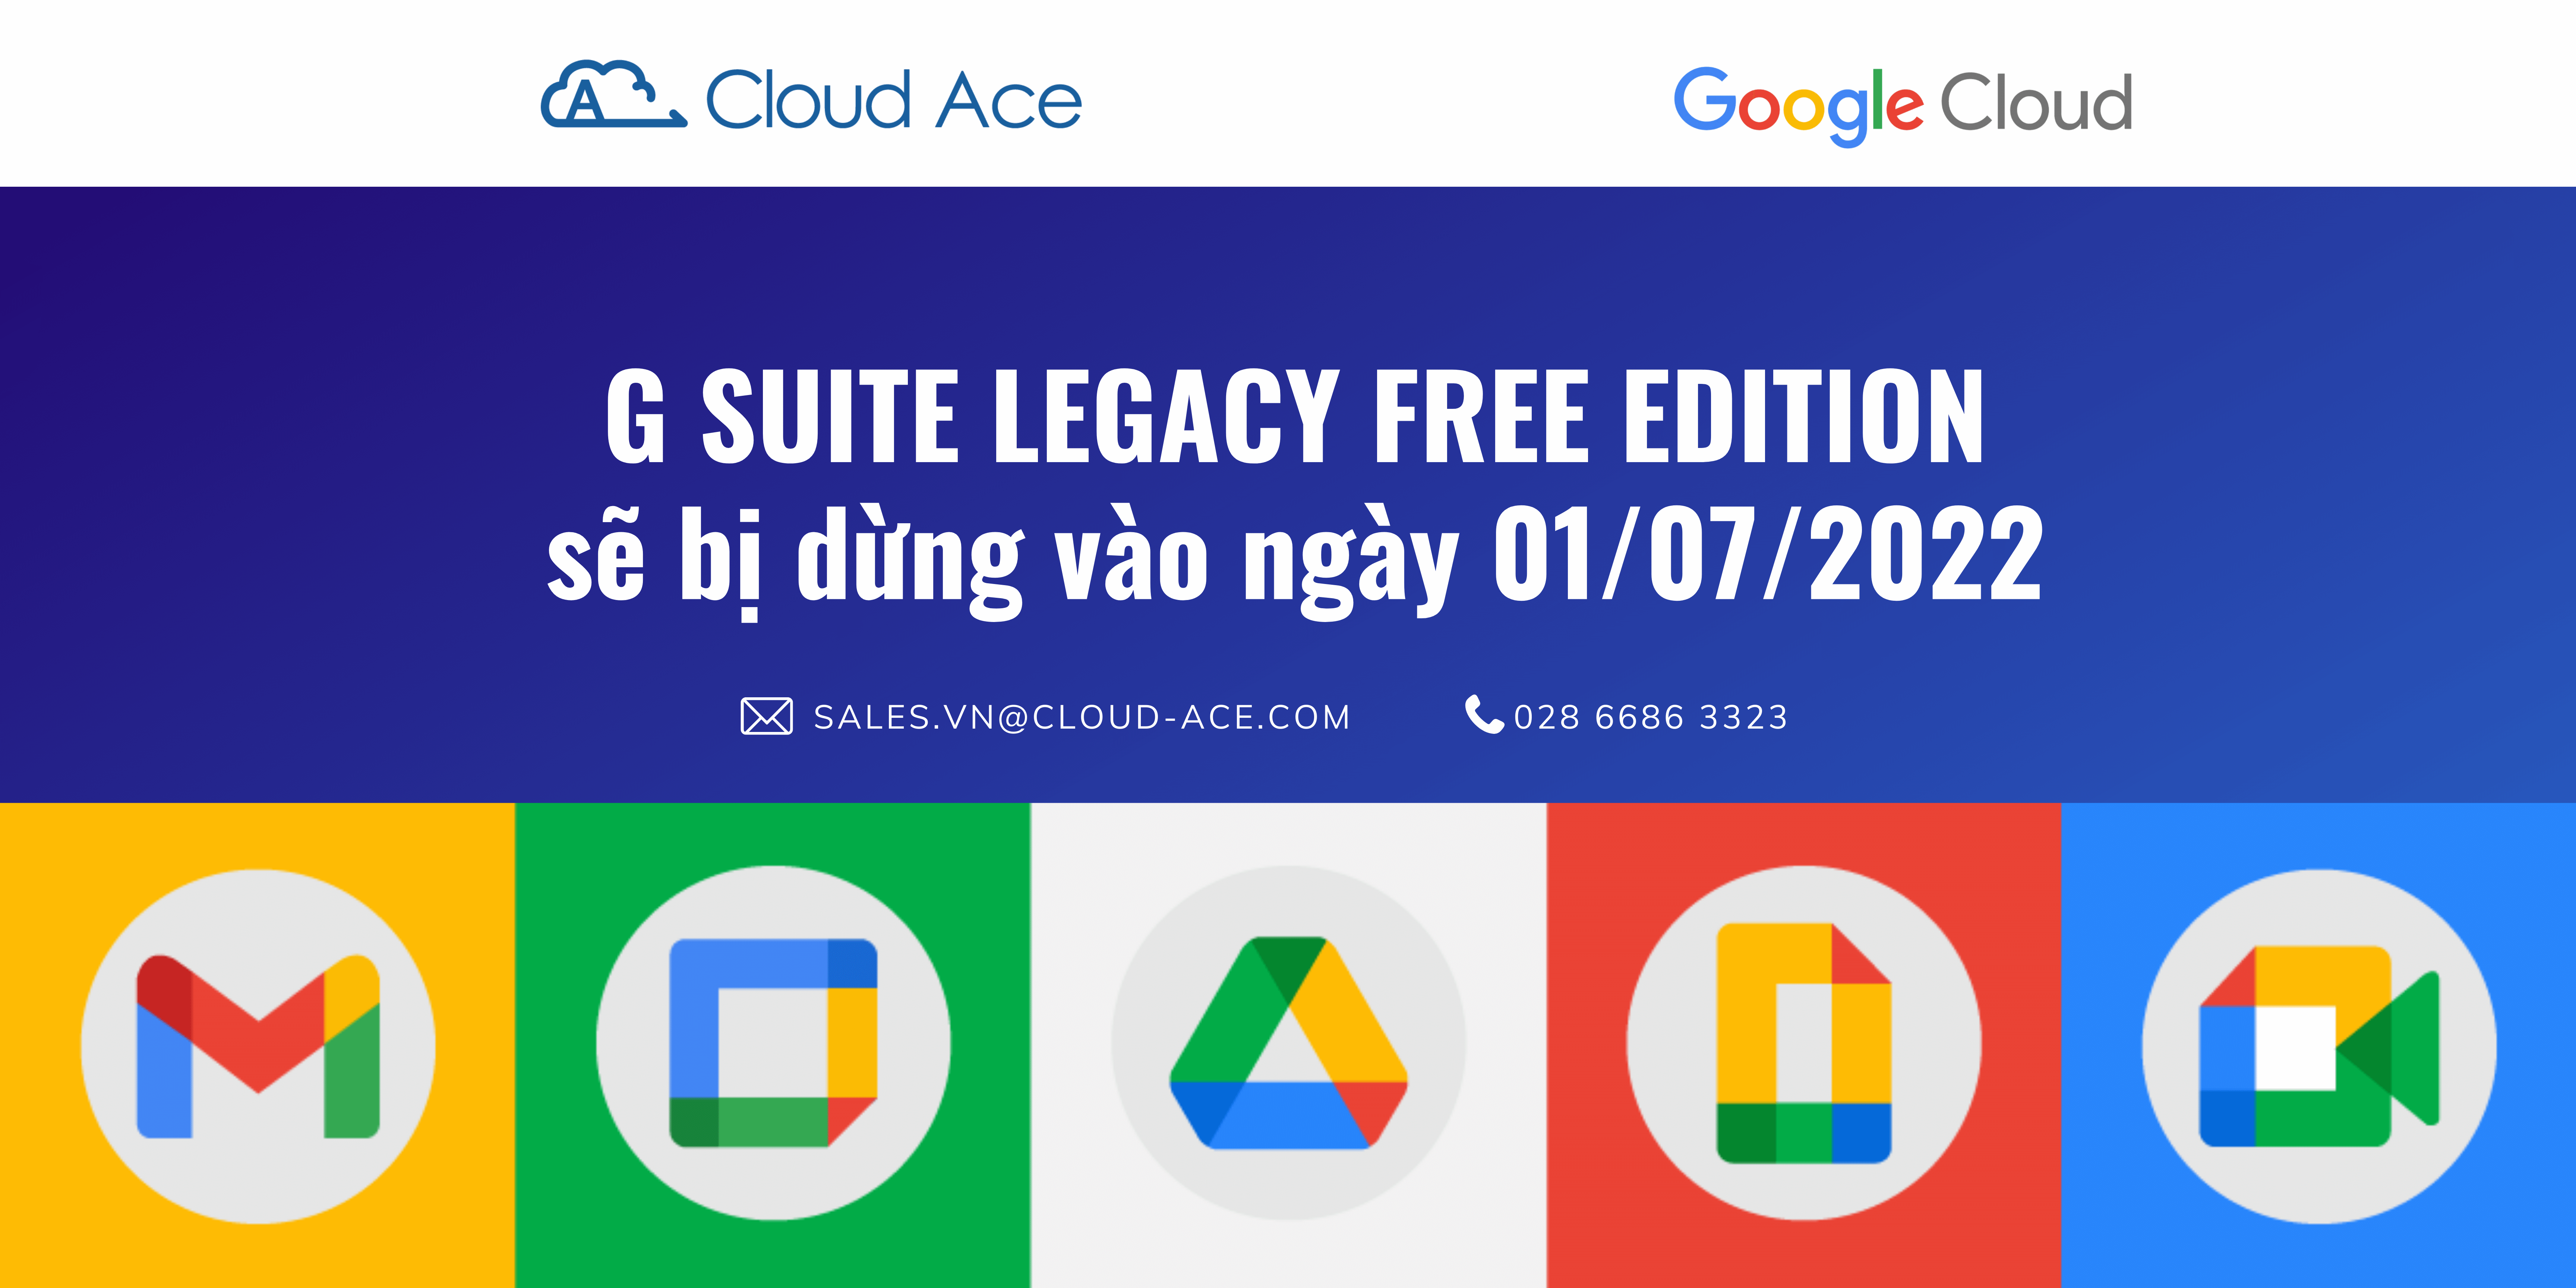 sales.vn@cloud-ace.com